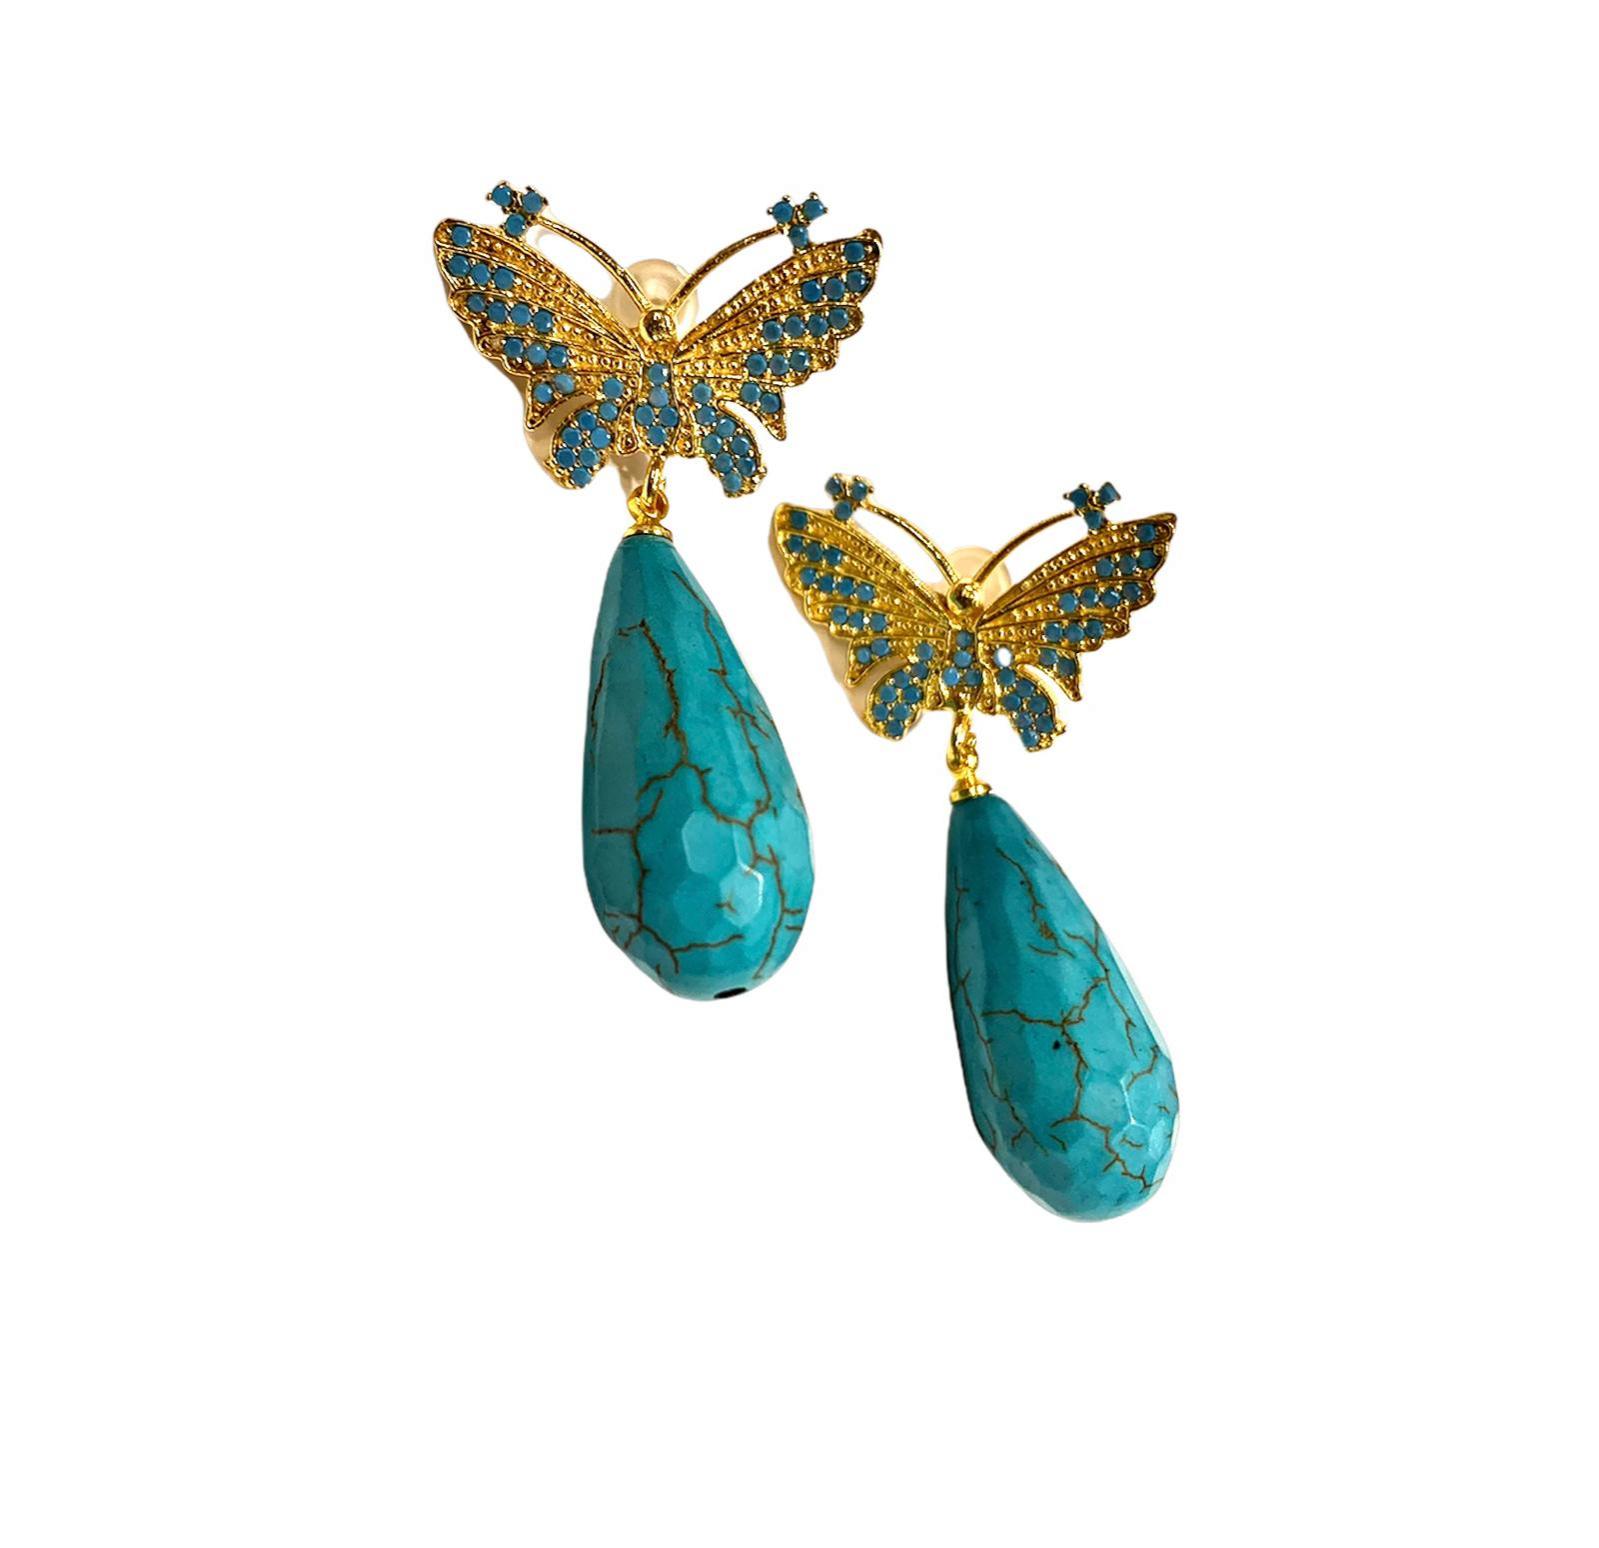 Pendientes estilo otomano - Mariposas turquesas